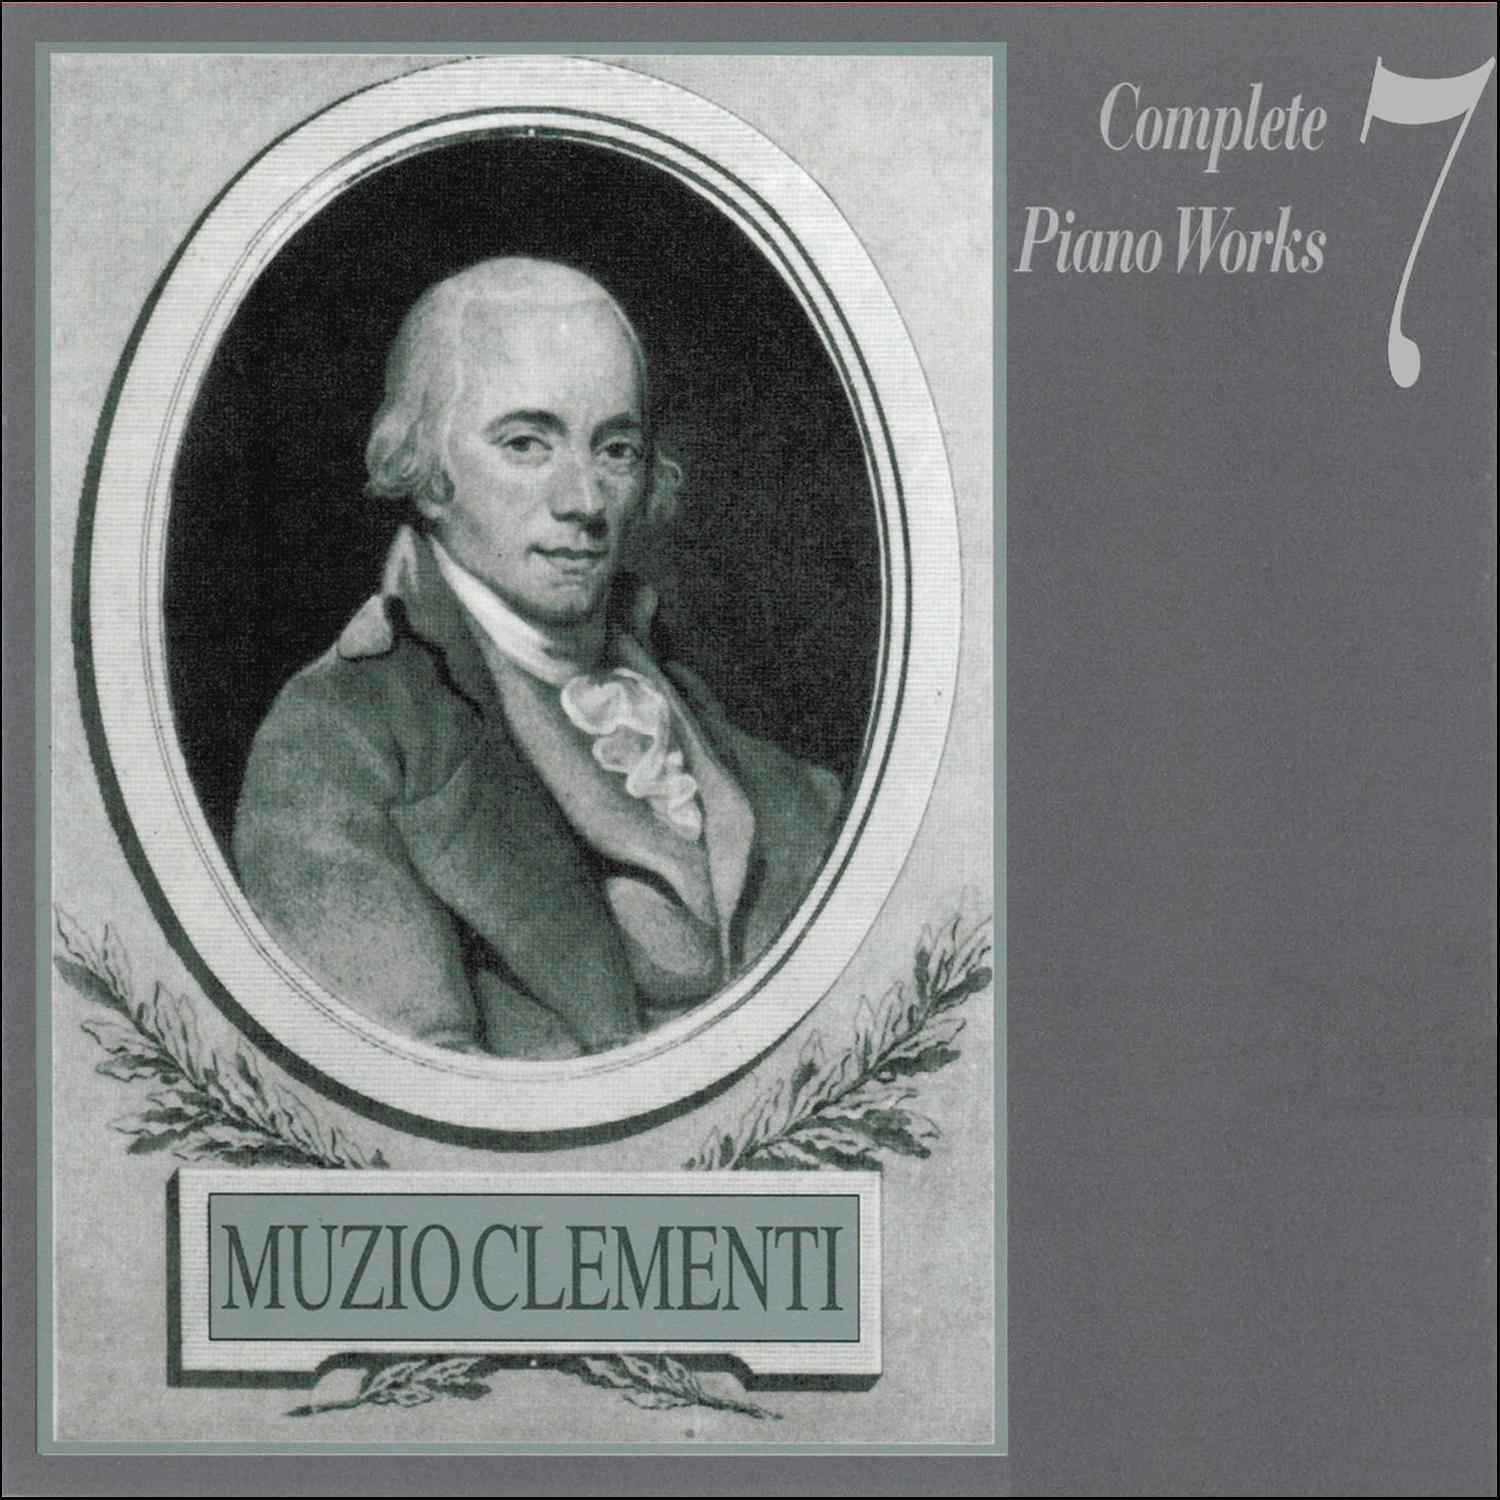 Muzio Clementi - Sonata Op. 9, No. 2 in C major: l. Allegro ma con espressione